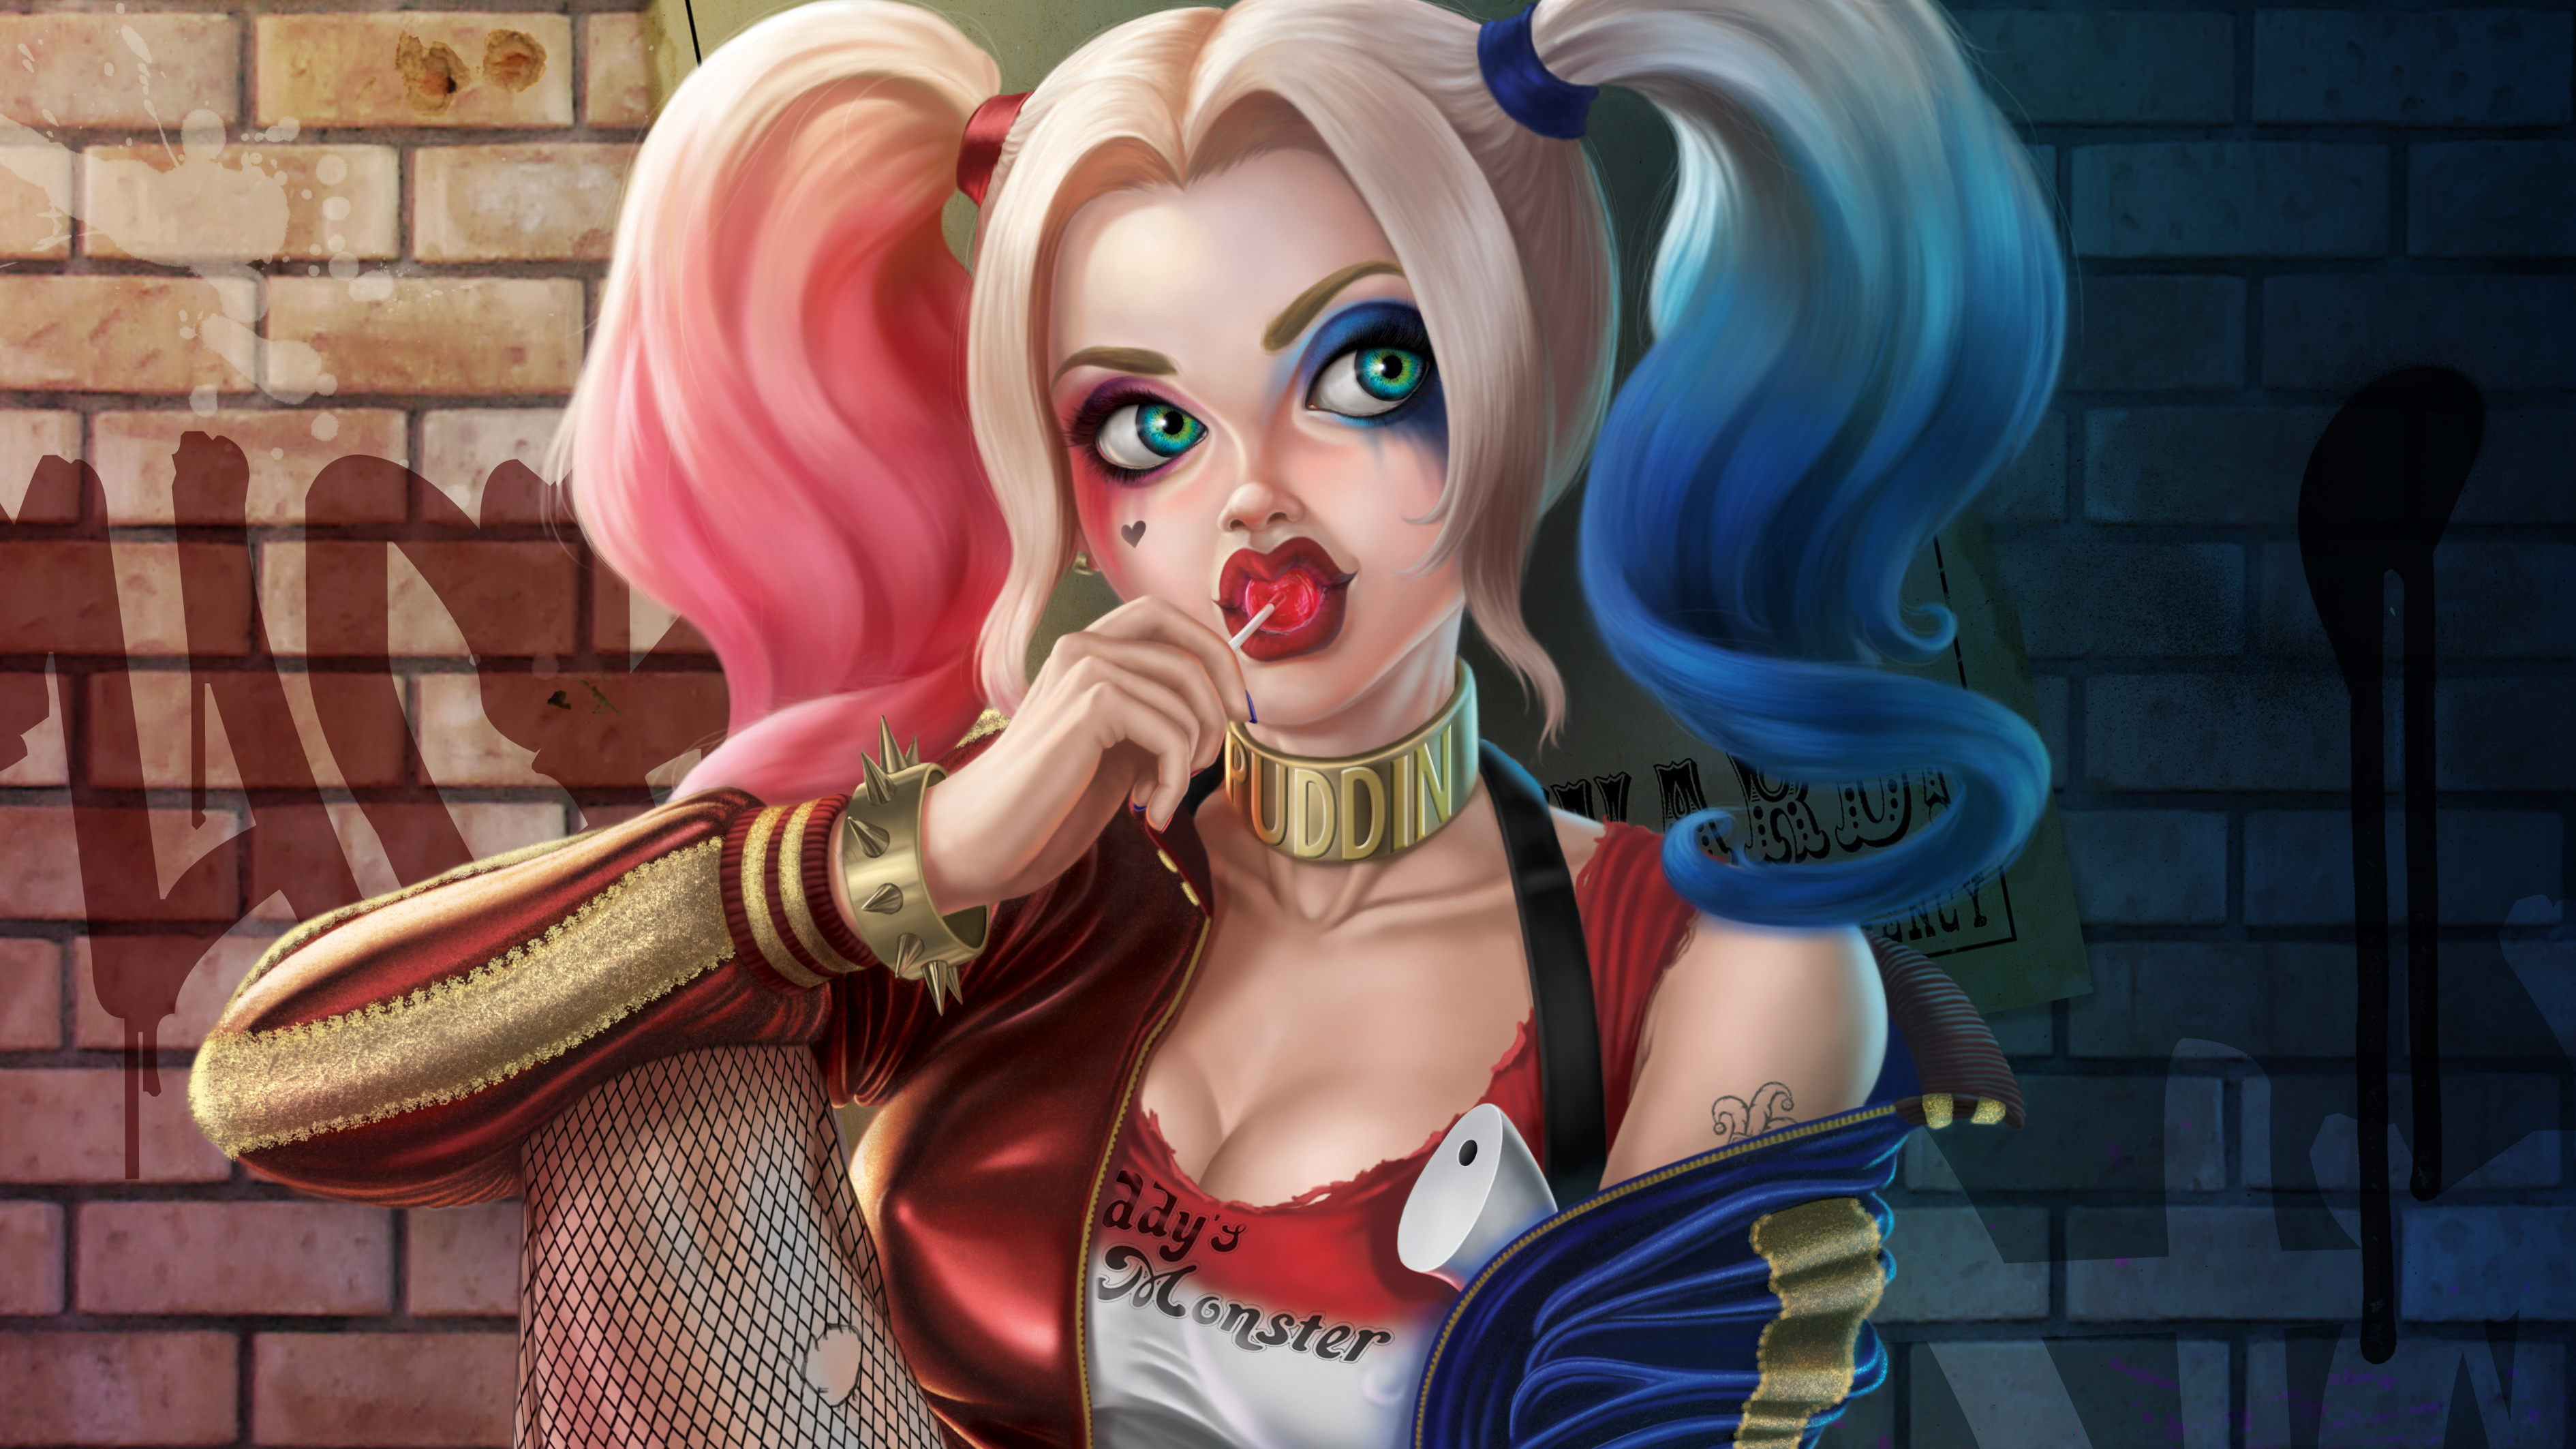 Harley Quinn 4k Cute, HD Superheroes, 4k Wallpapers ...